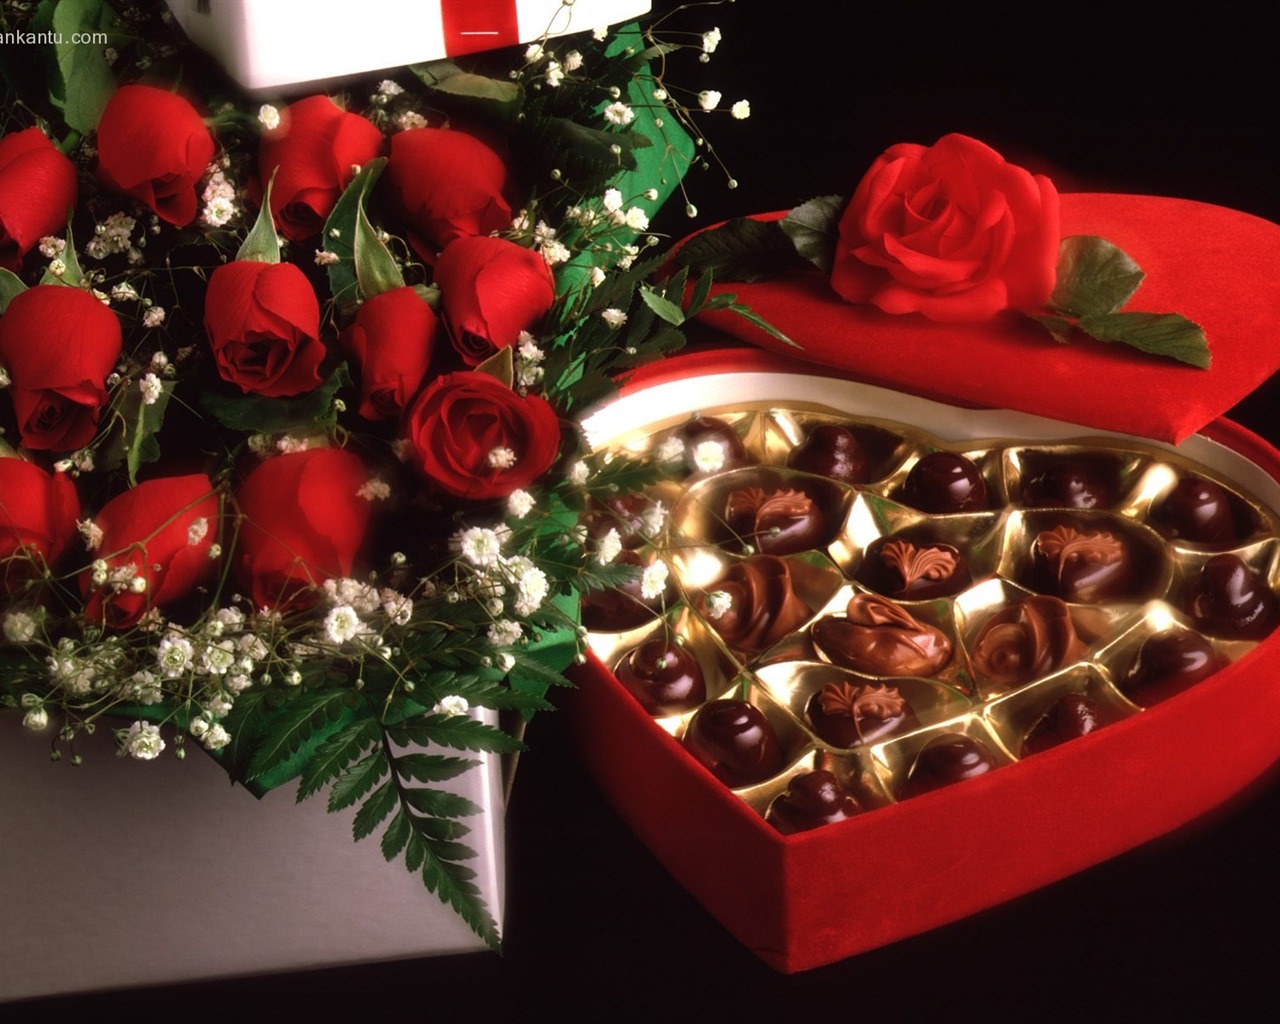 Le indélébile Saint Valentin au chocolat #4 - 1280x1024